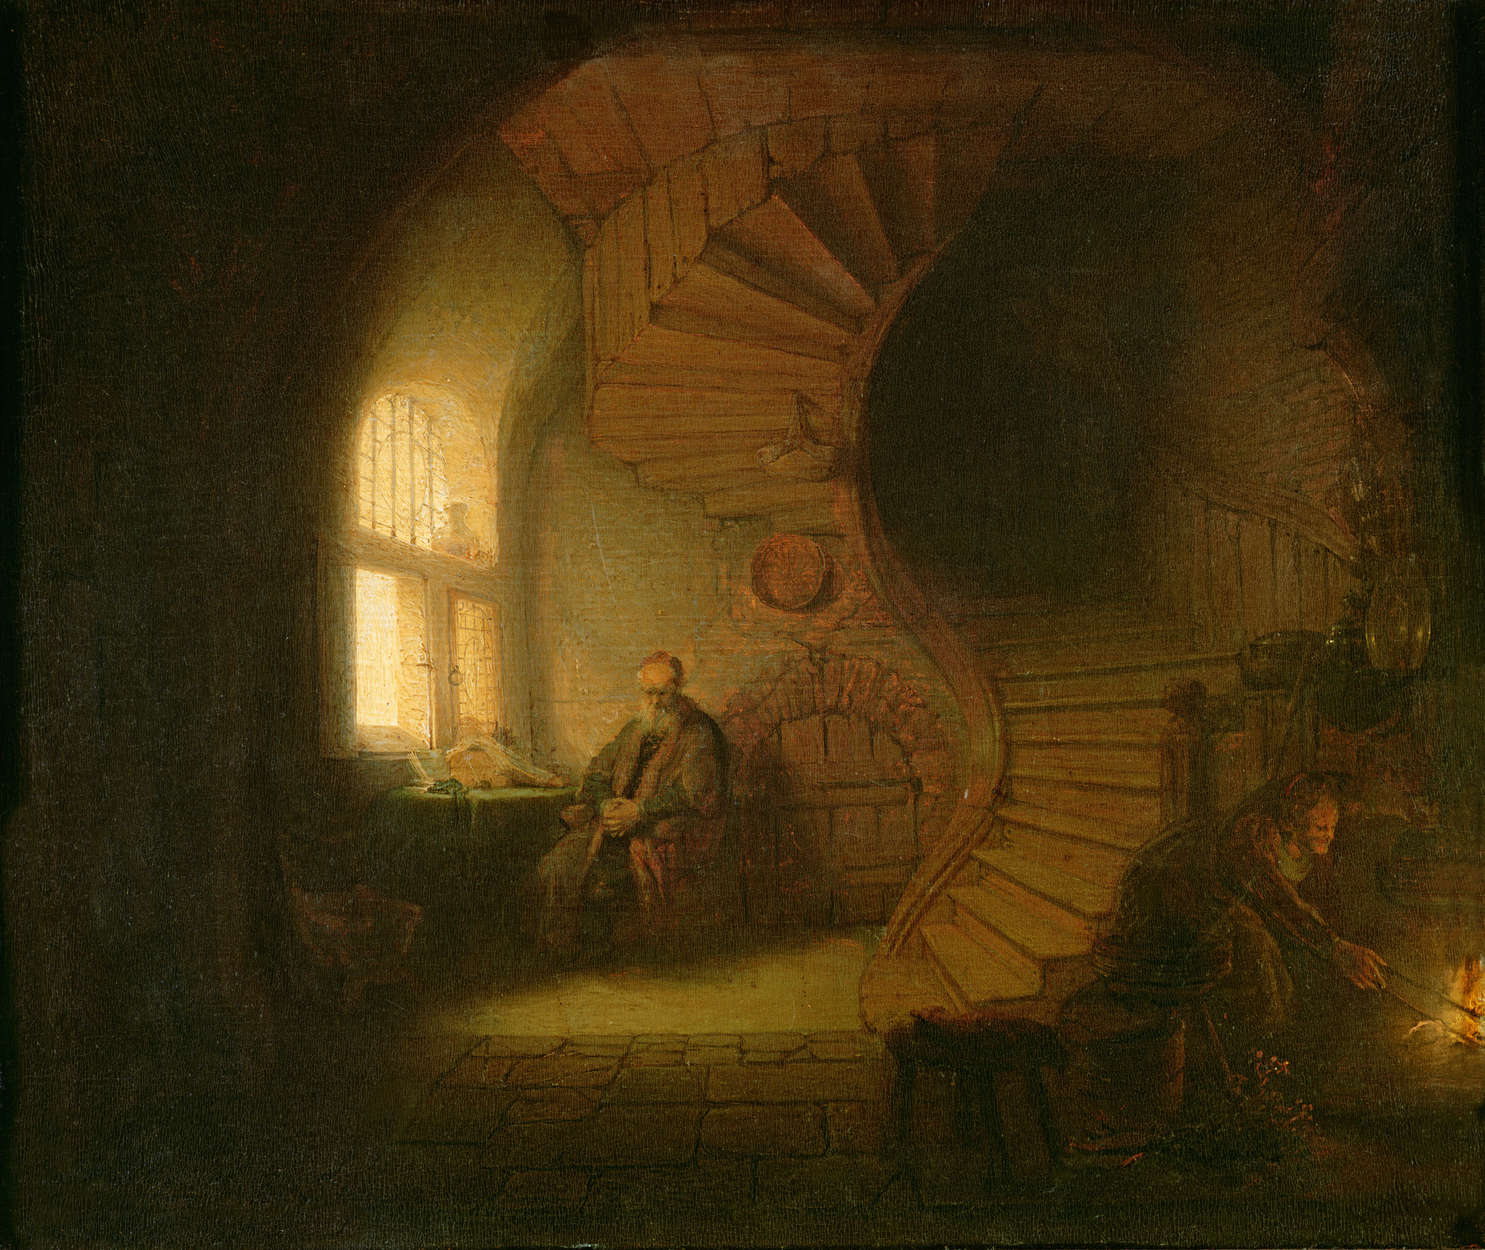             Papier peint "Philosophe en méditation" de Rembrandt van Rijn
        